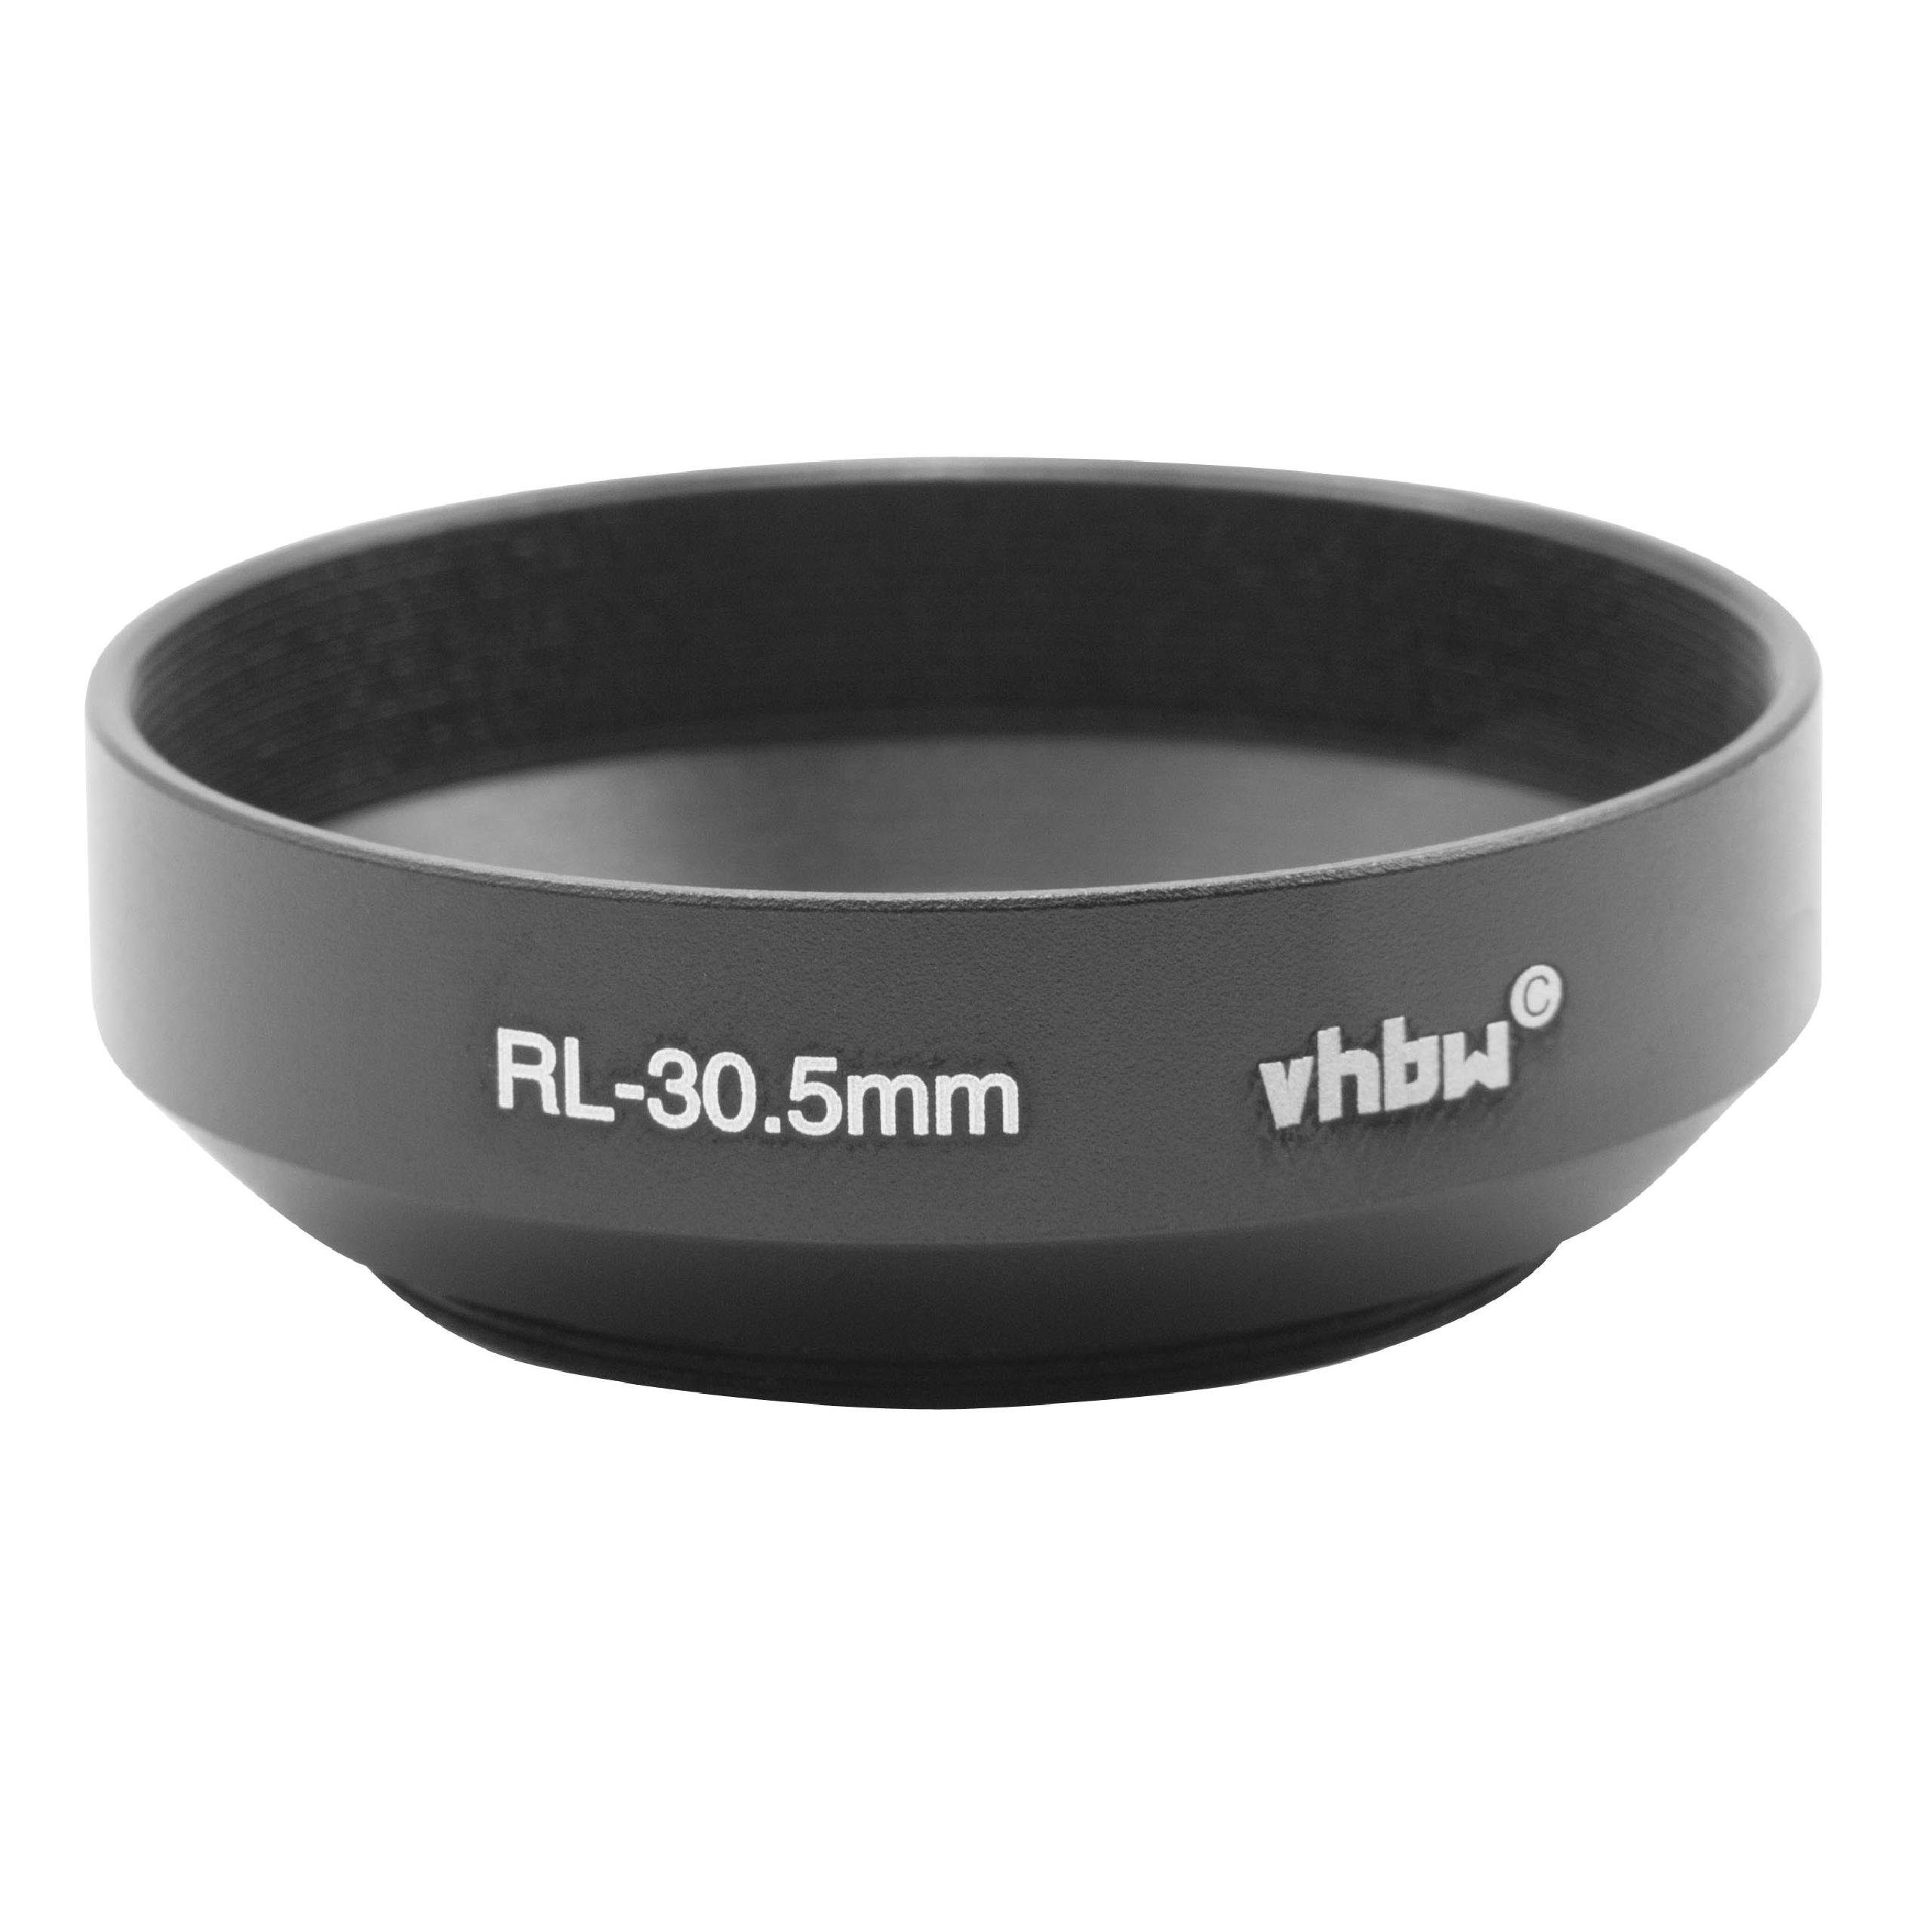 vhbw Ersatz für Rollei RL-30,5mm für Kamera / Foto DSLR Gegenlichtblende